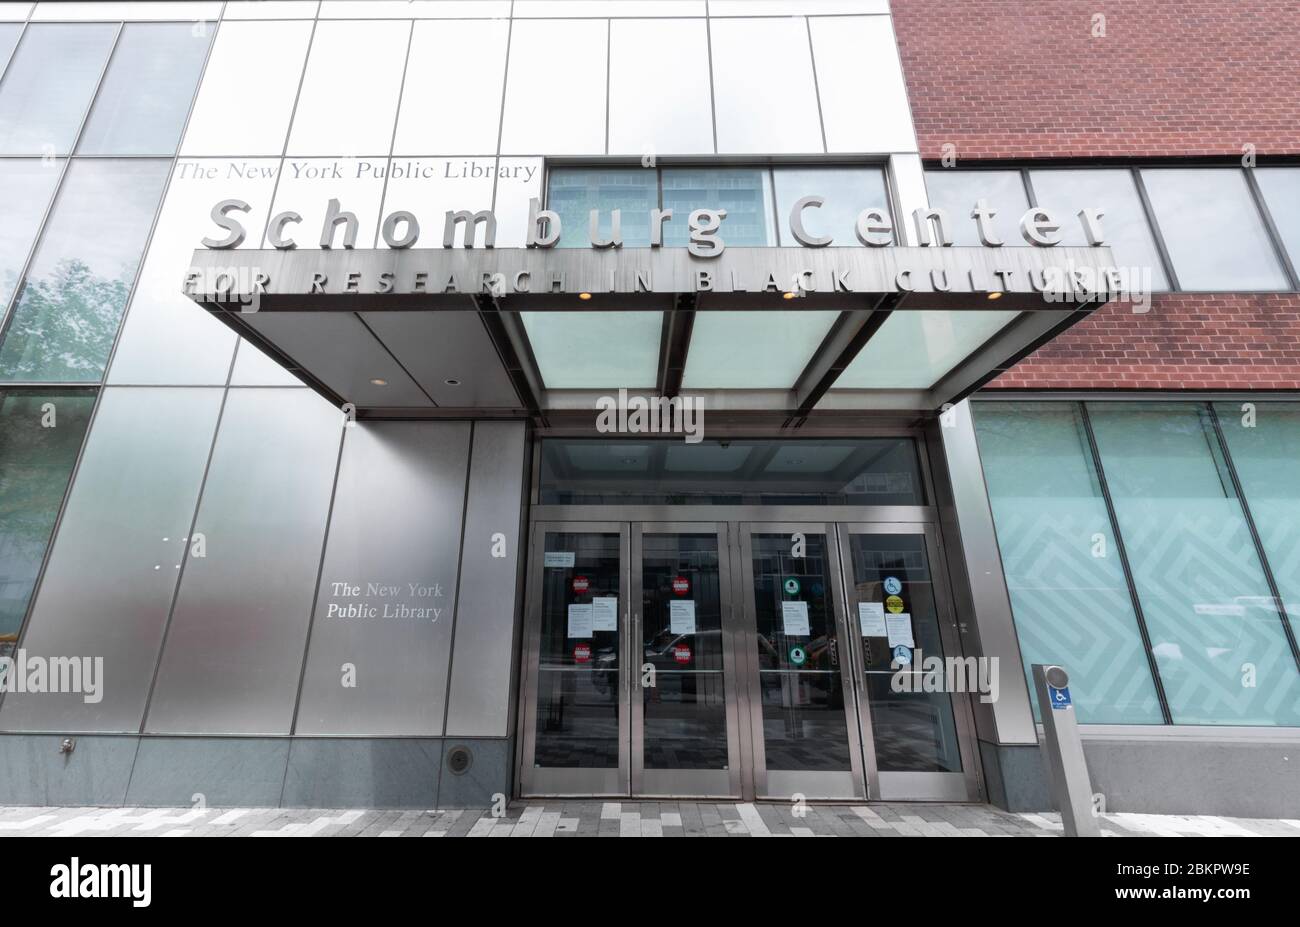 Schomburg Centre for Research in Black Culture à Harlem, une branche de la New York public Library avec des collections spéciales sur la culture afro-américaine Banque D'Images